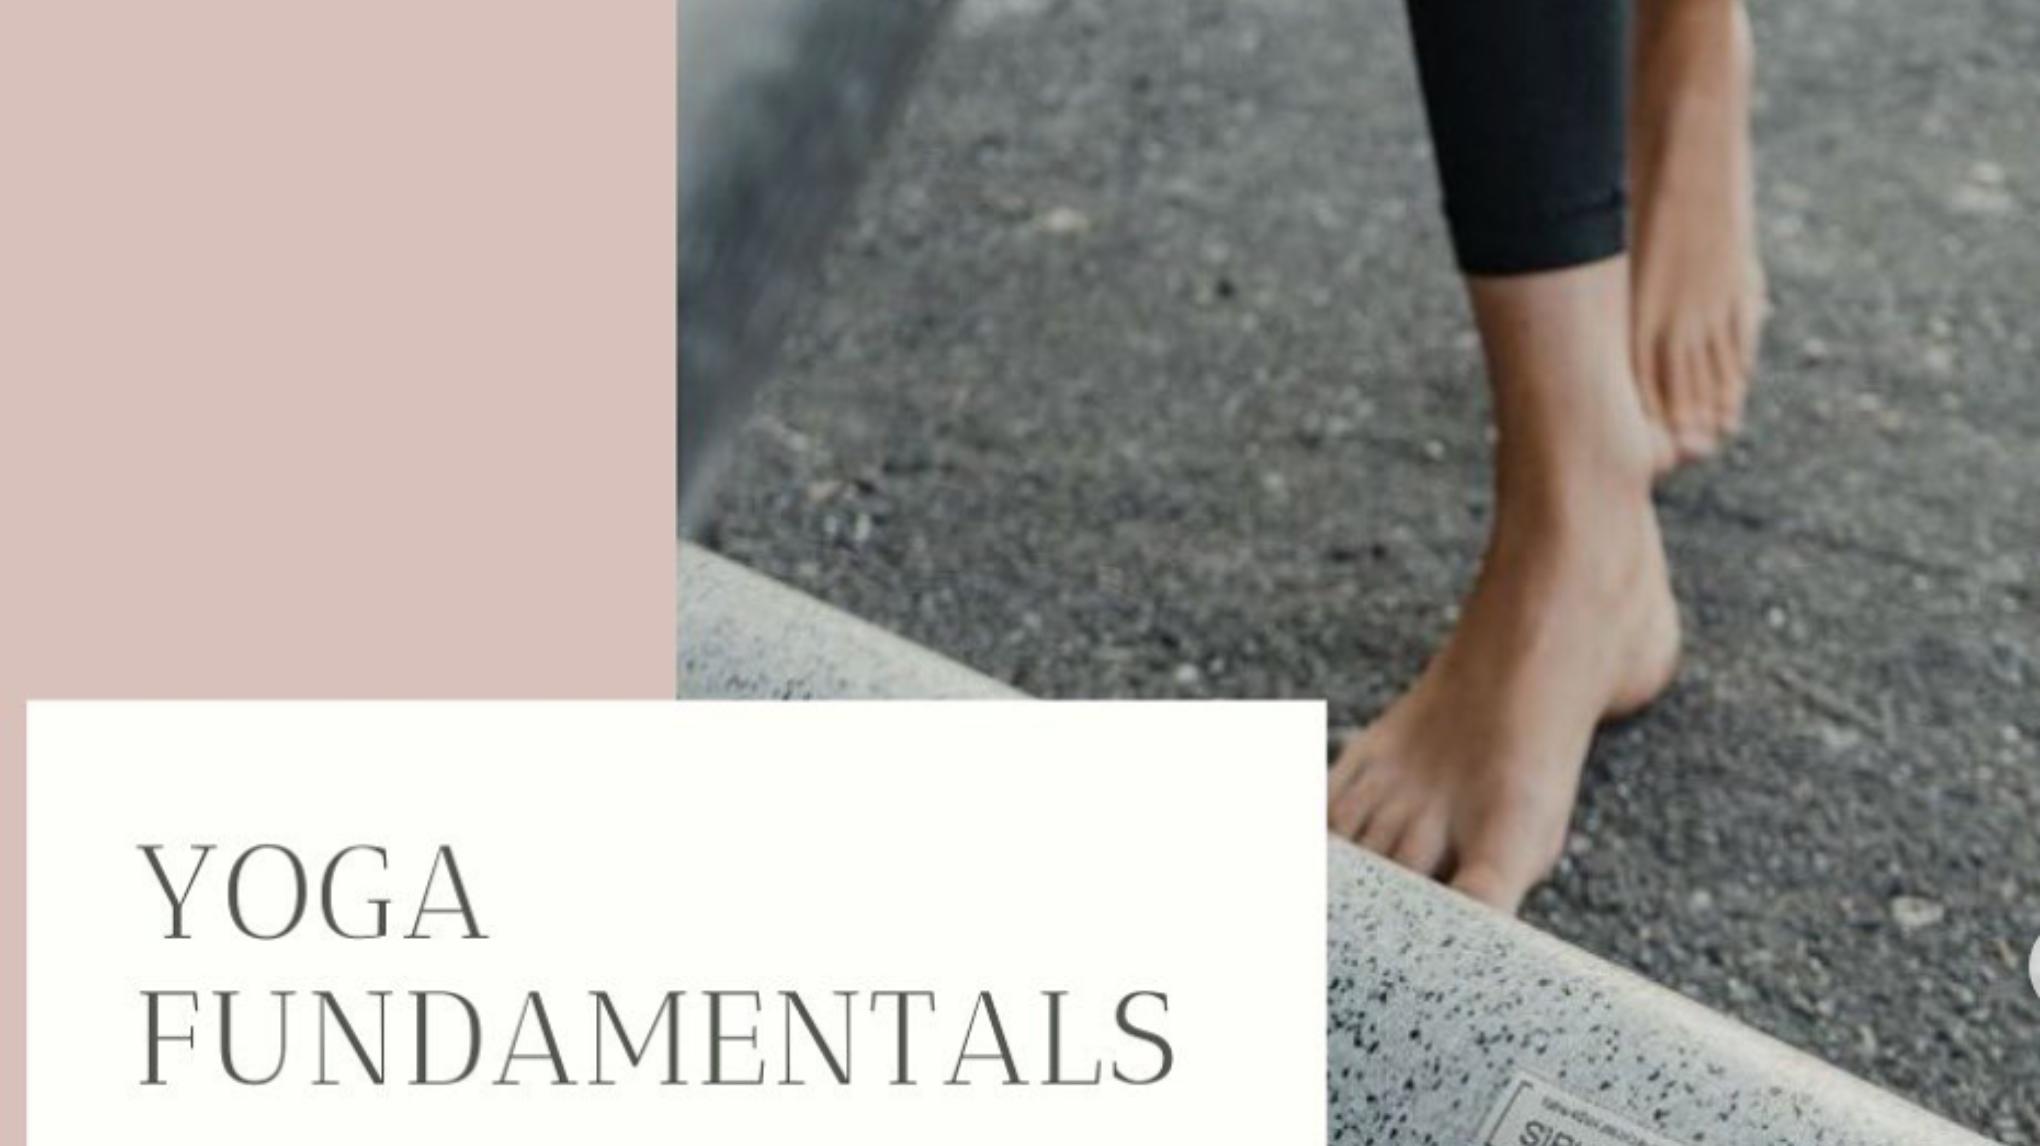 Yoga Fundamentals reeks